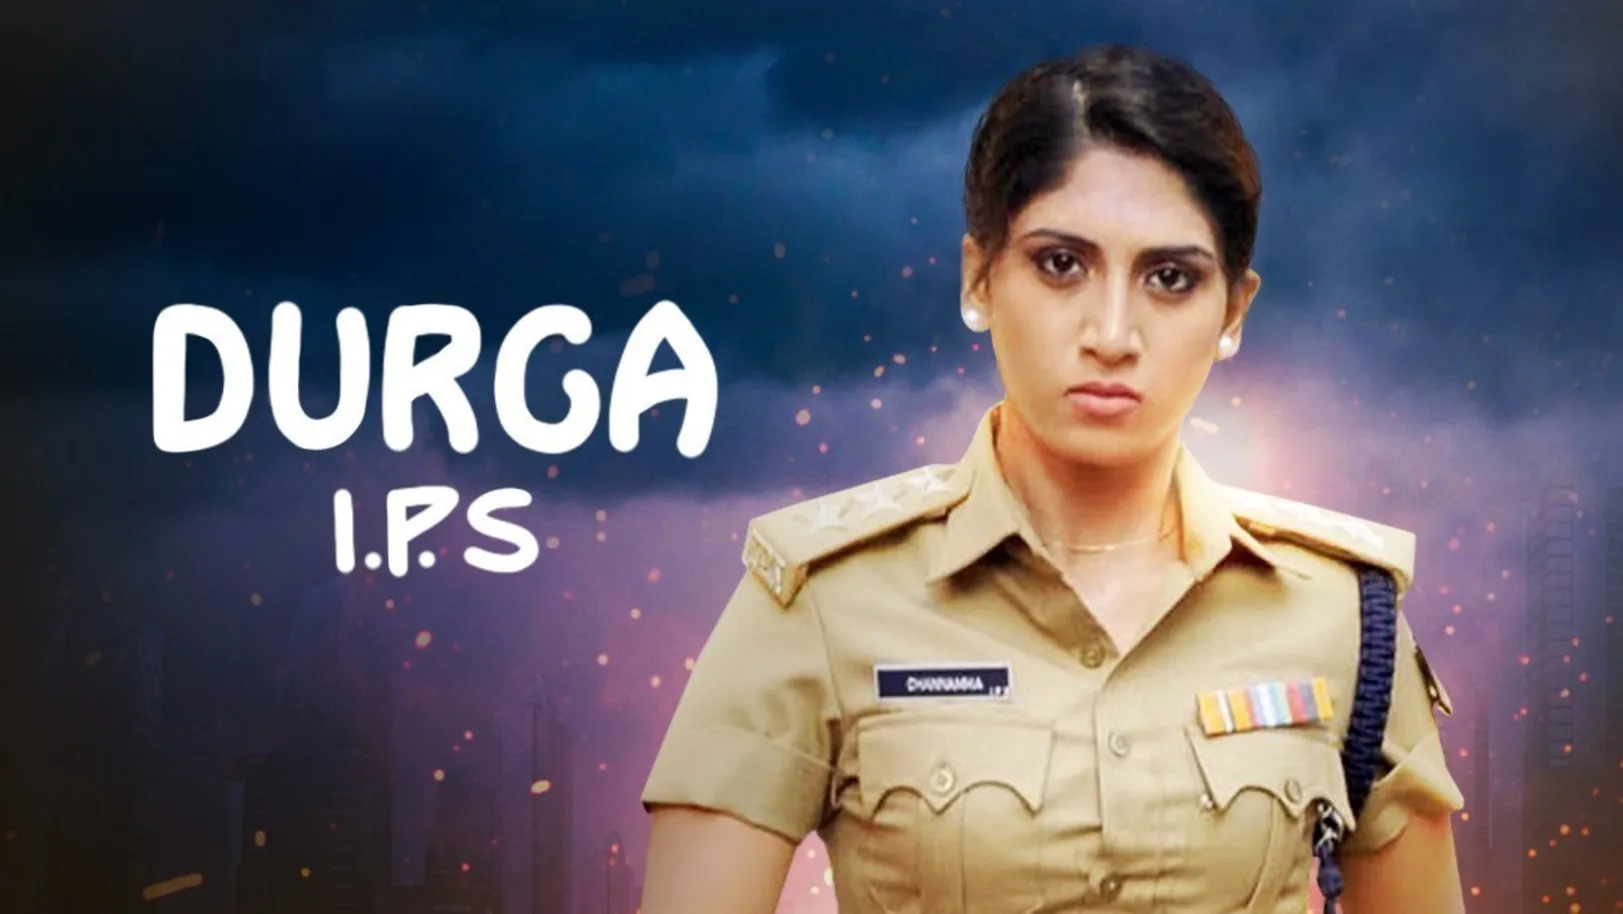 Durga IPS Movie